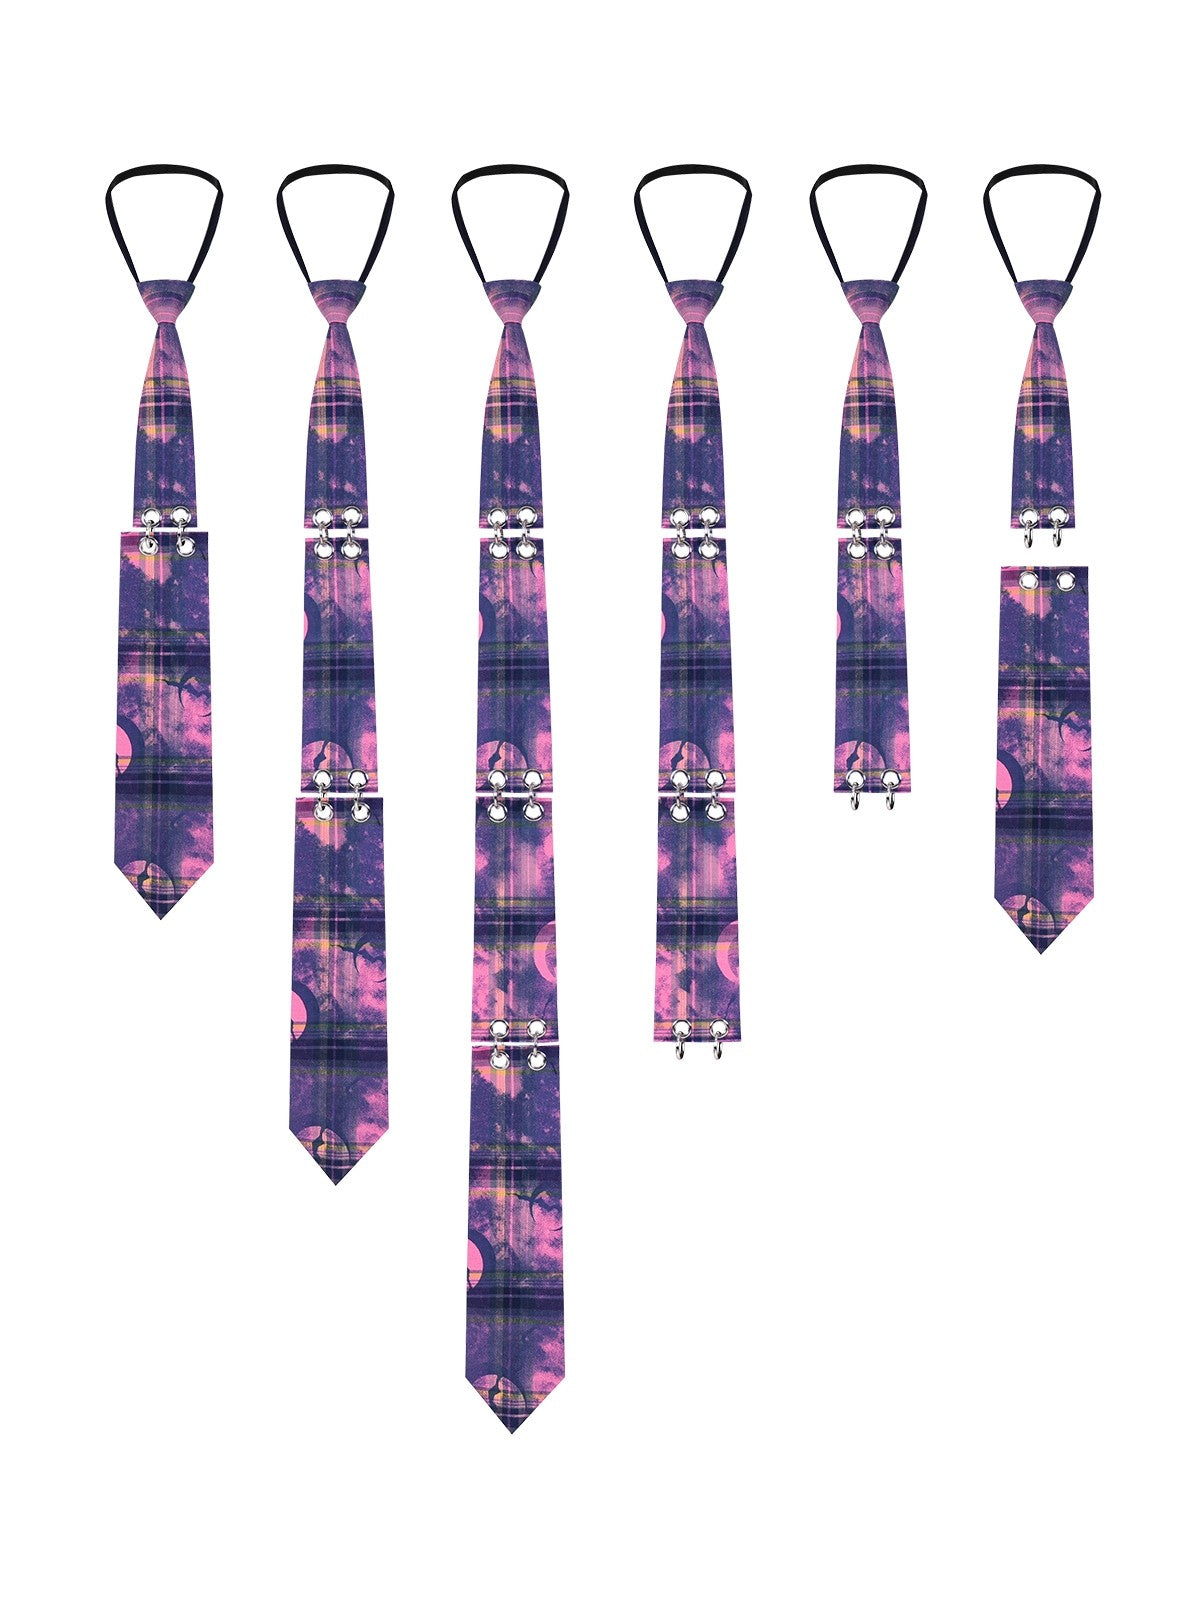 A modular long tie